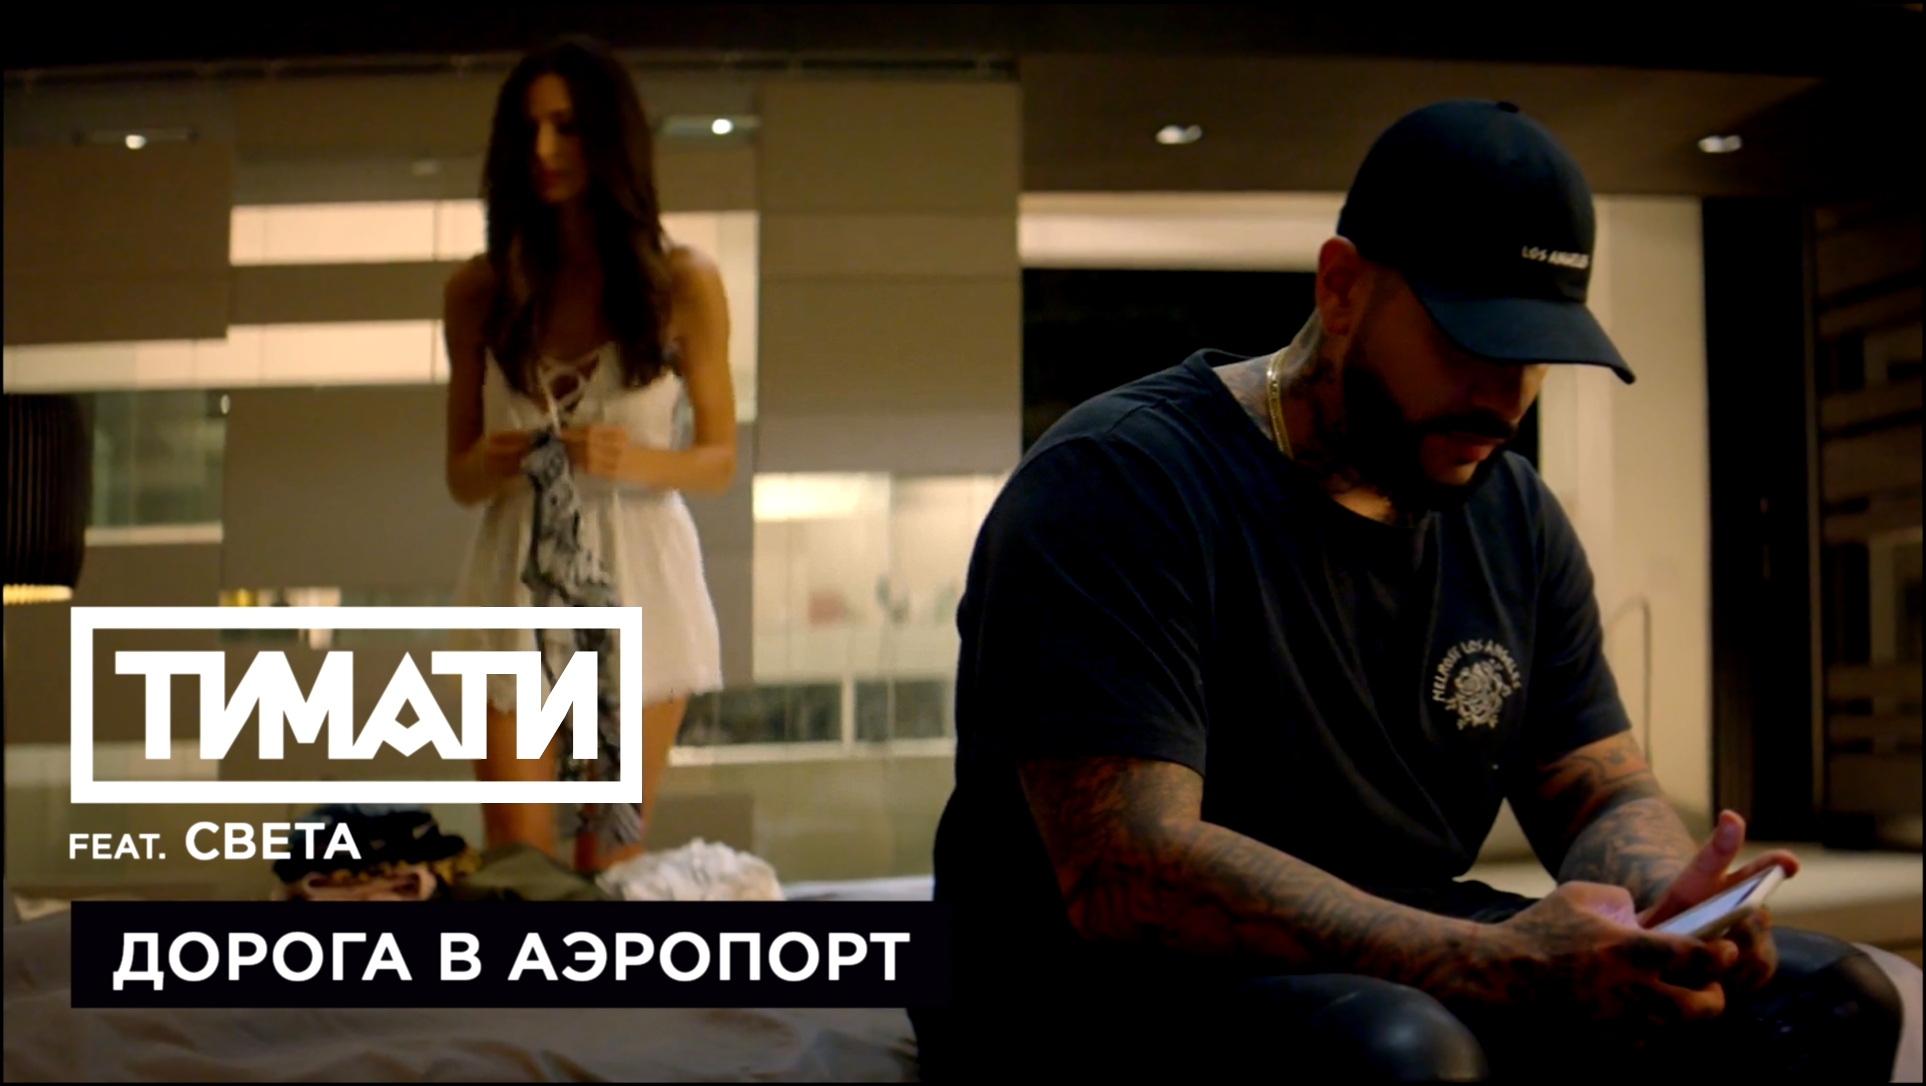 Тимати feat. Света - Дорога в аэропорт (премьера клипа, 2017) 